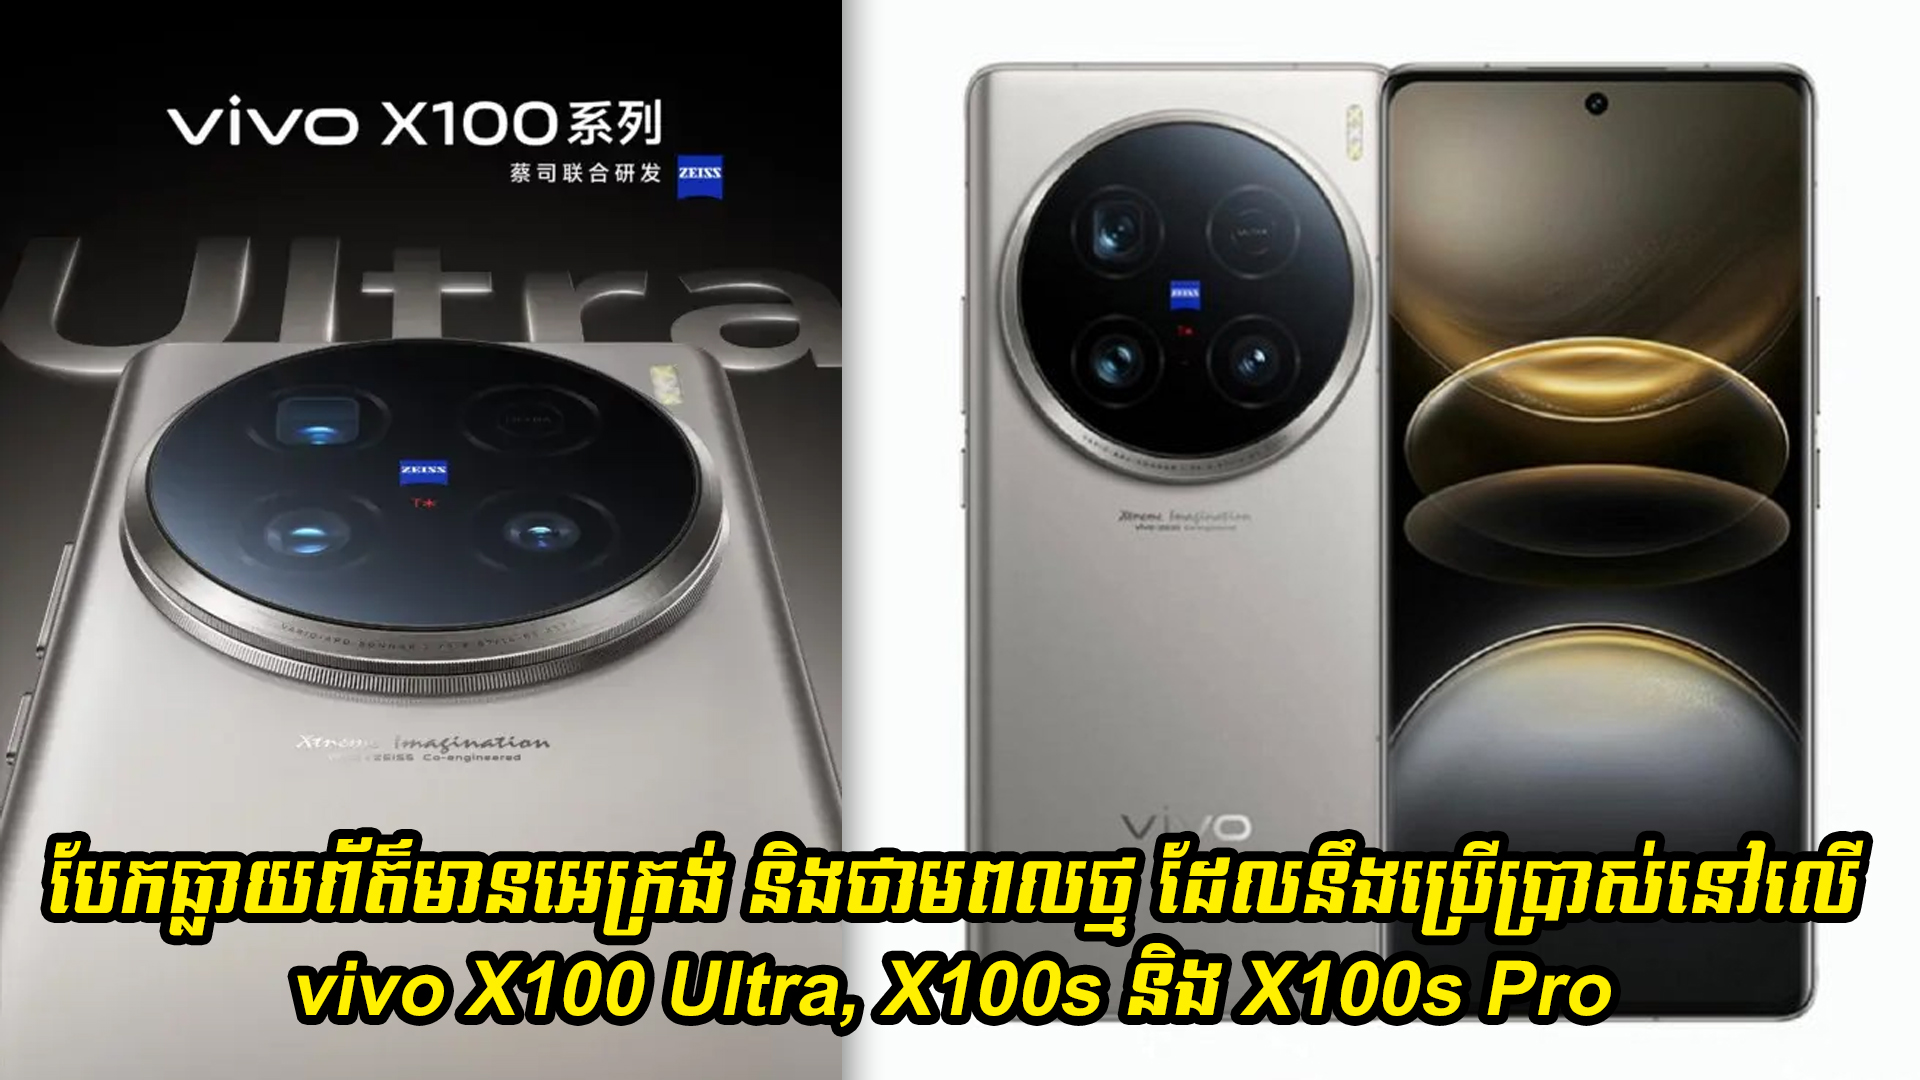 បែកធ្លាយព័ត៌មានអេក្រង់ និងថាមពលថ្មដែលនឹងប្រើប្រាស់នៅលើ vivo X100 Ultra, X100s និង X100s Pro